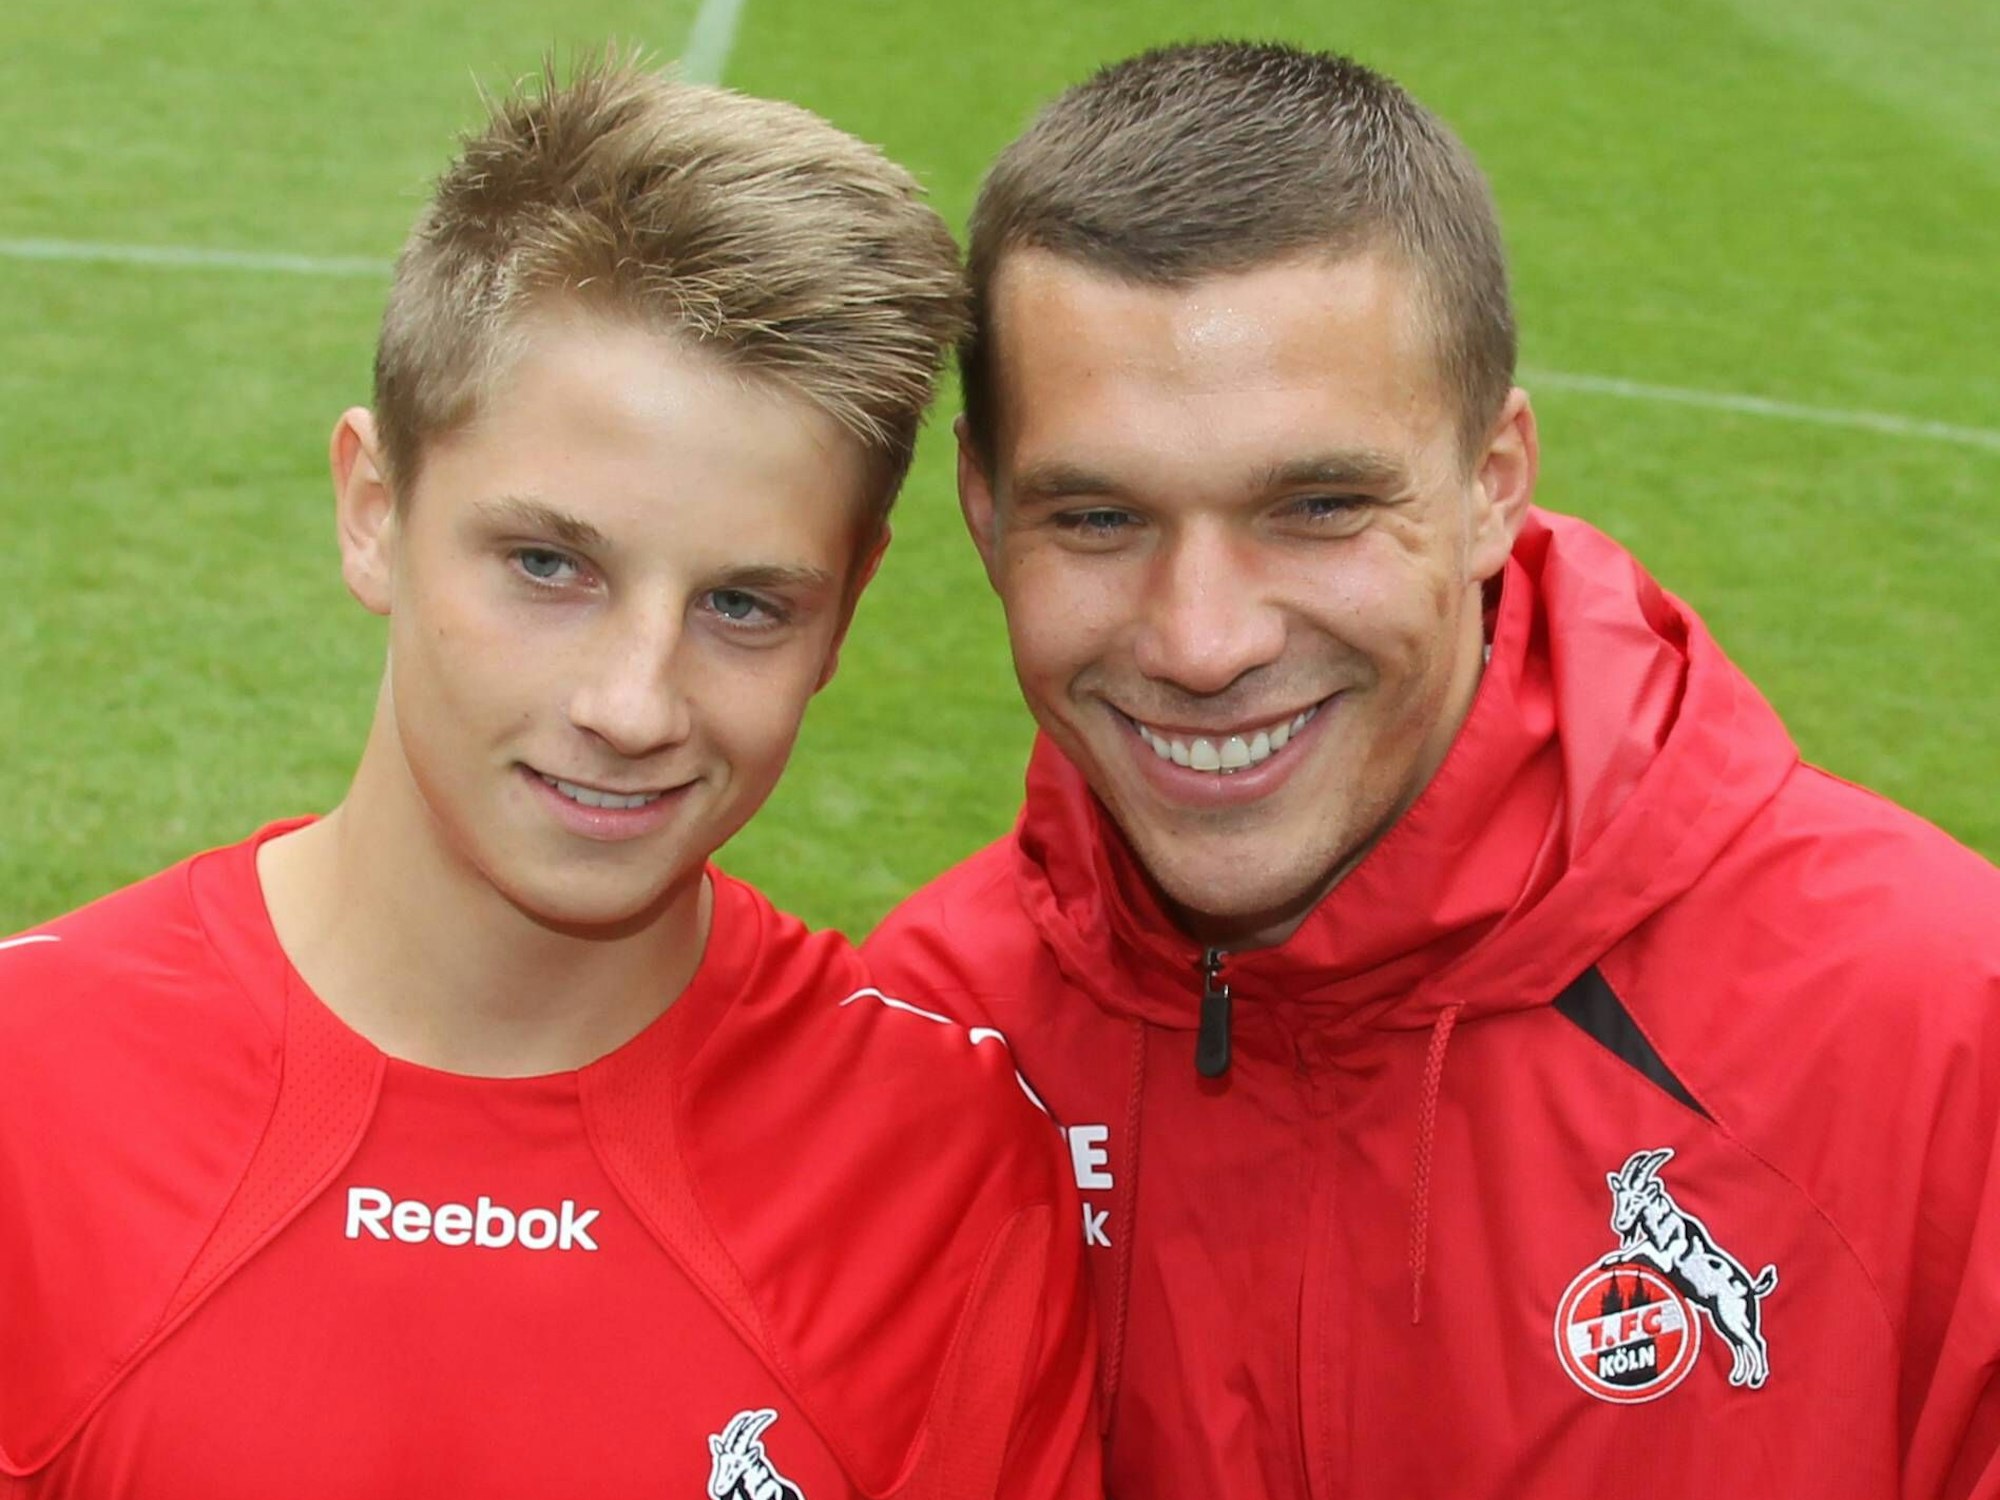 Lukas Scepanik (U17 1. FC Köln) hat das Tor des Monats erzielt und wird dafür von Lukas Podolski (1. FC Köln) geehrt.